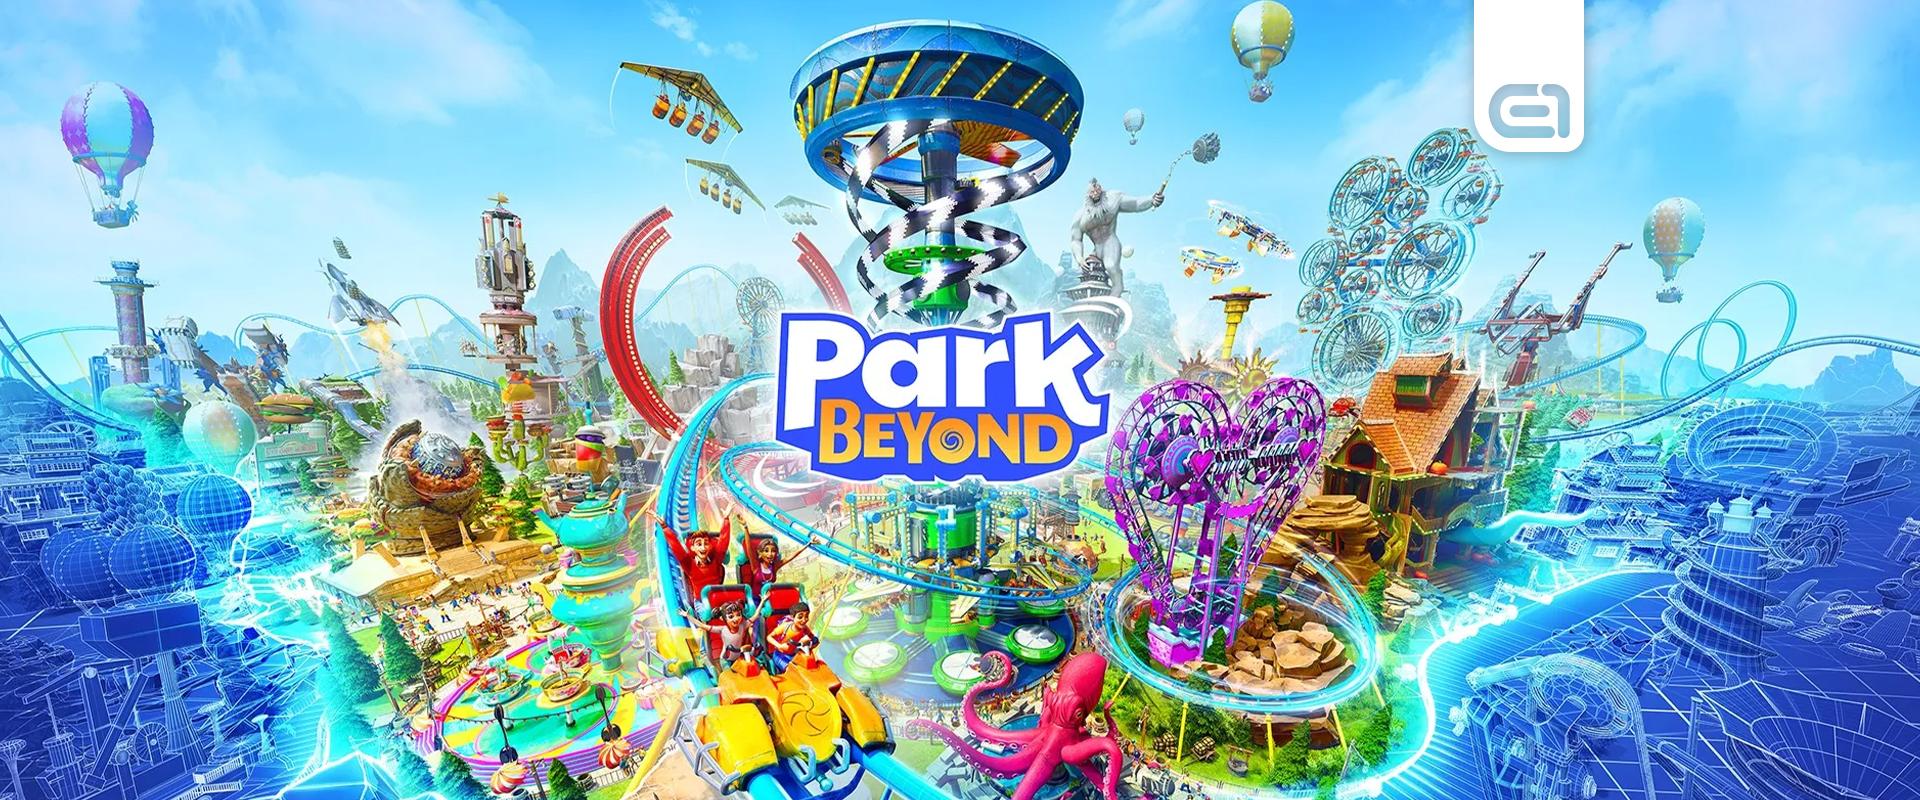 Park Beyond játékteszt: Ülj fel a hullámvasútra!